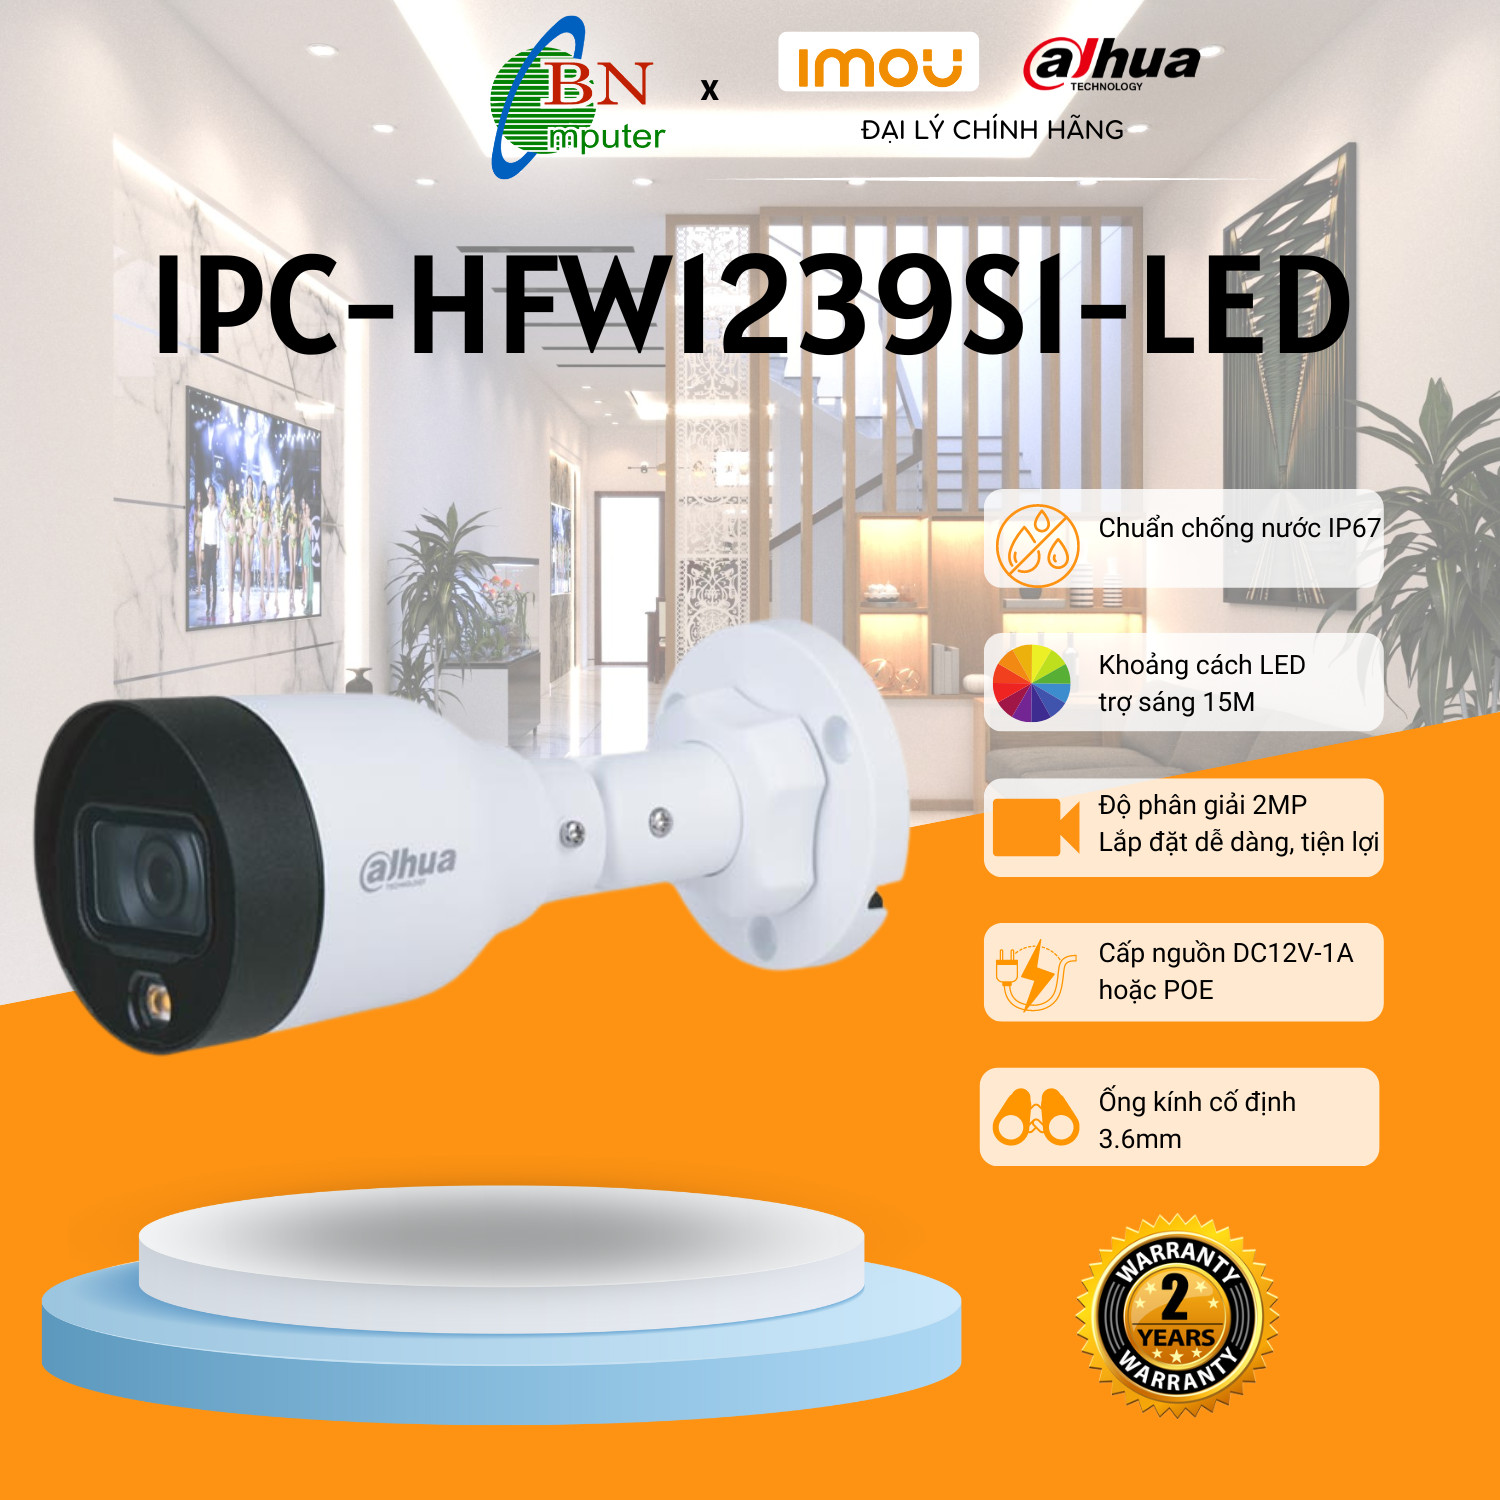 Camera IP Dahua HFW 1239S1-LED-S5 độ phân giải 2.0MP, tích hợp đèn led trợ sáng cho hình ảnh có màu 24/24h